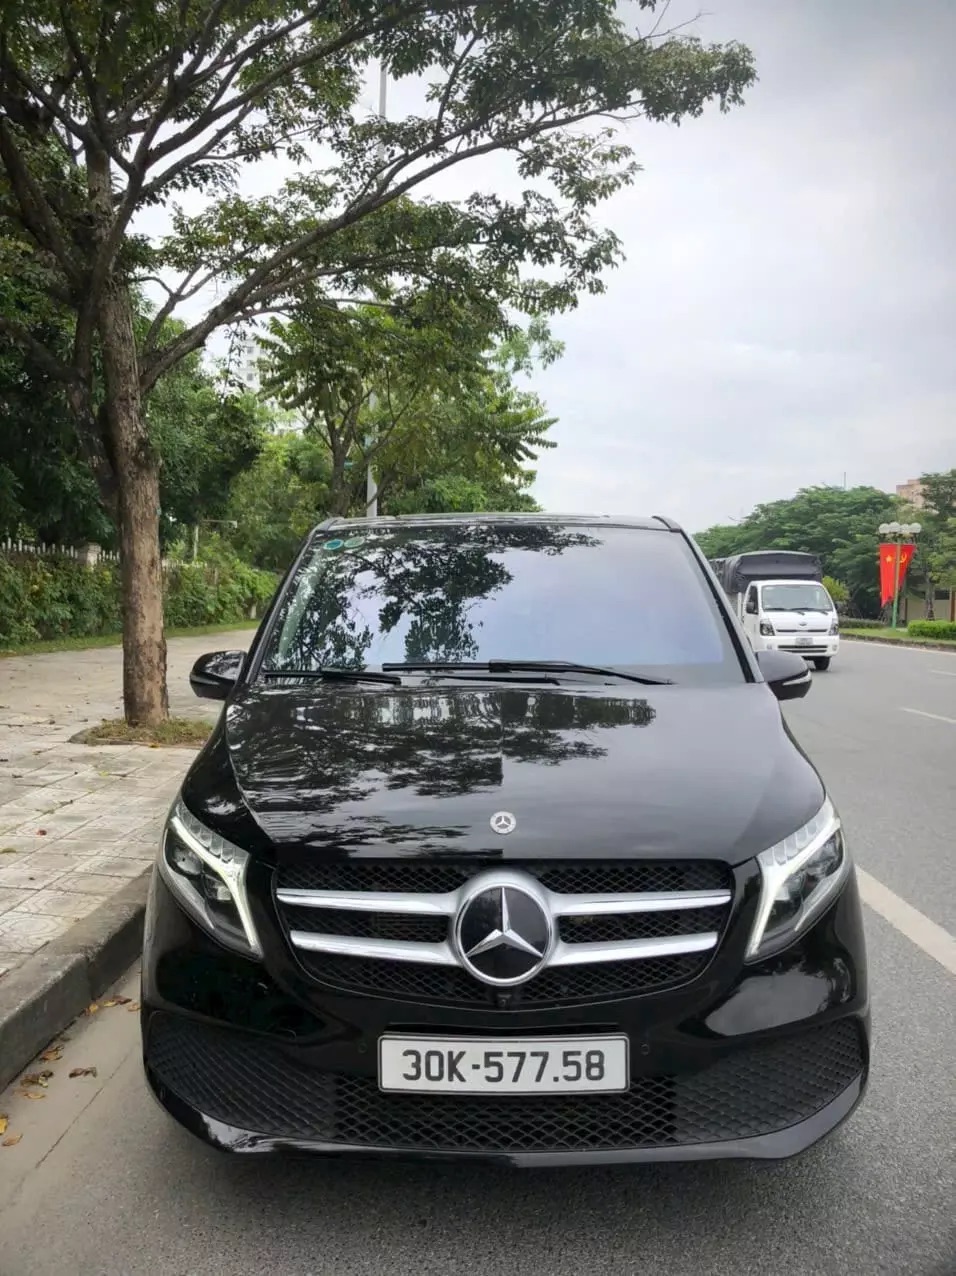 Chiếc Mercedes-Benz S-Class độ Maybach chở CEO Apple tại Hà Nội từng đưa đón Khoa Pug, nhiều lần dùng làm xe hoa - ảnh 12